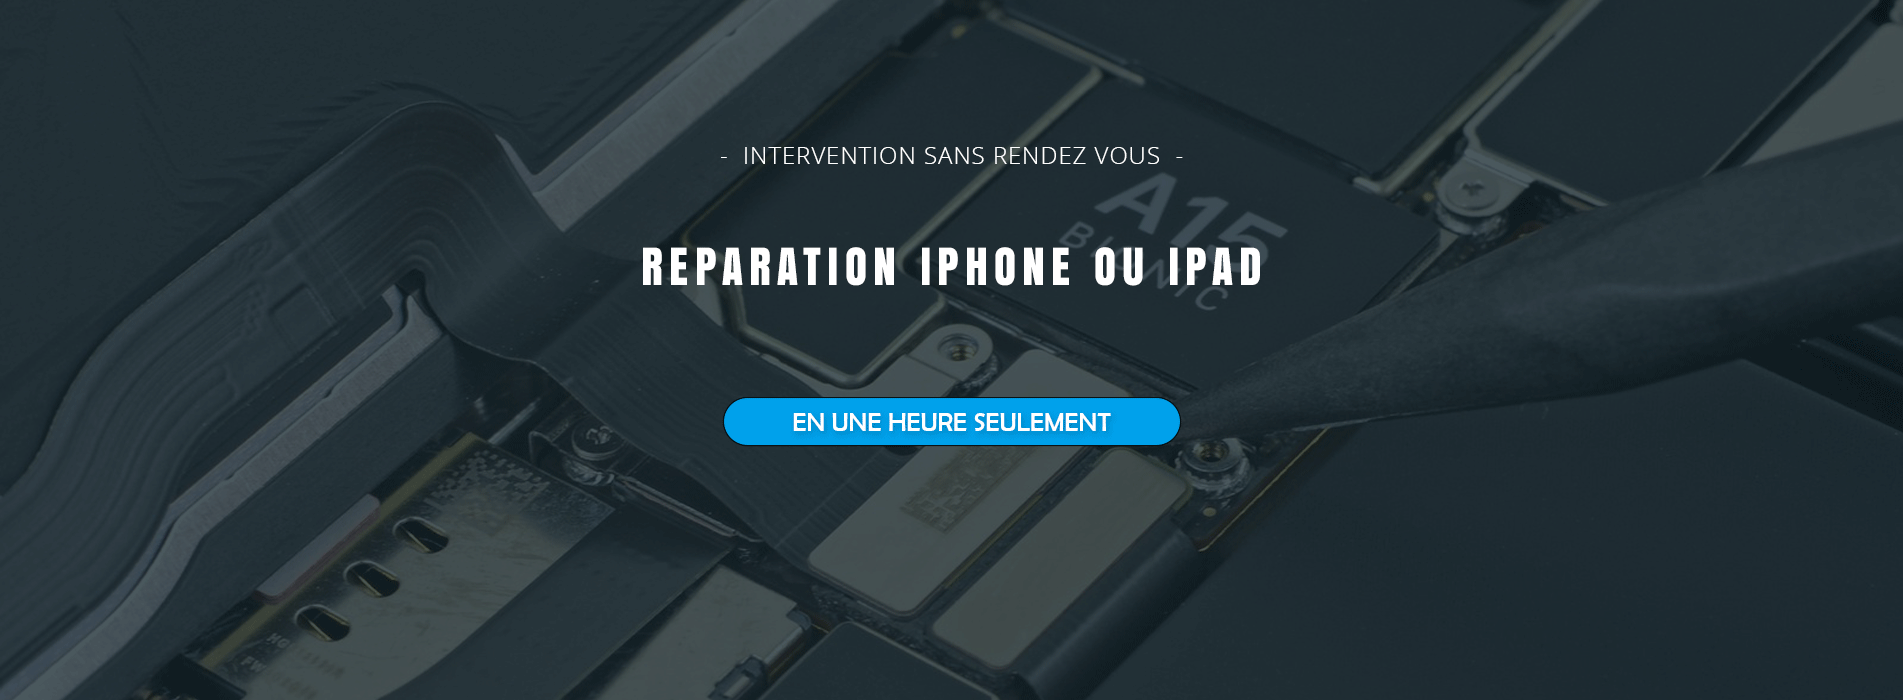 Réparation iPhone Lyon